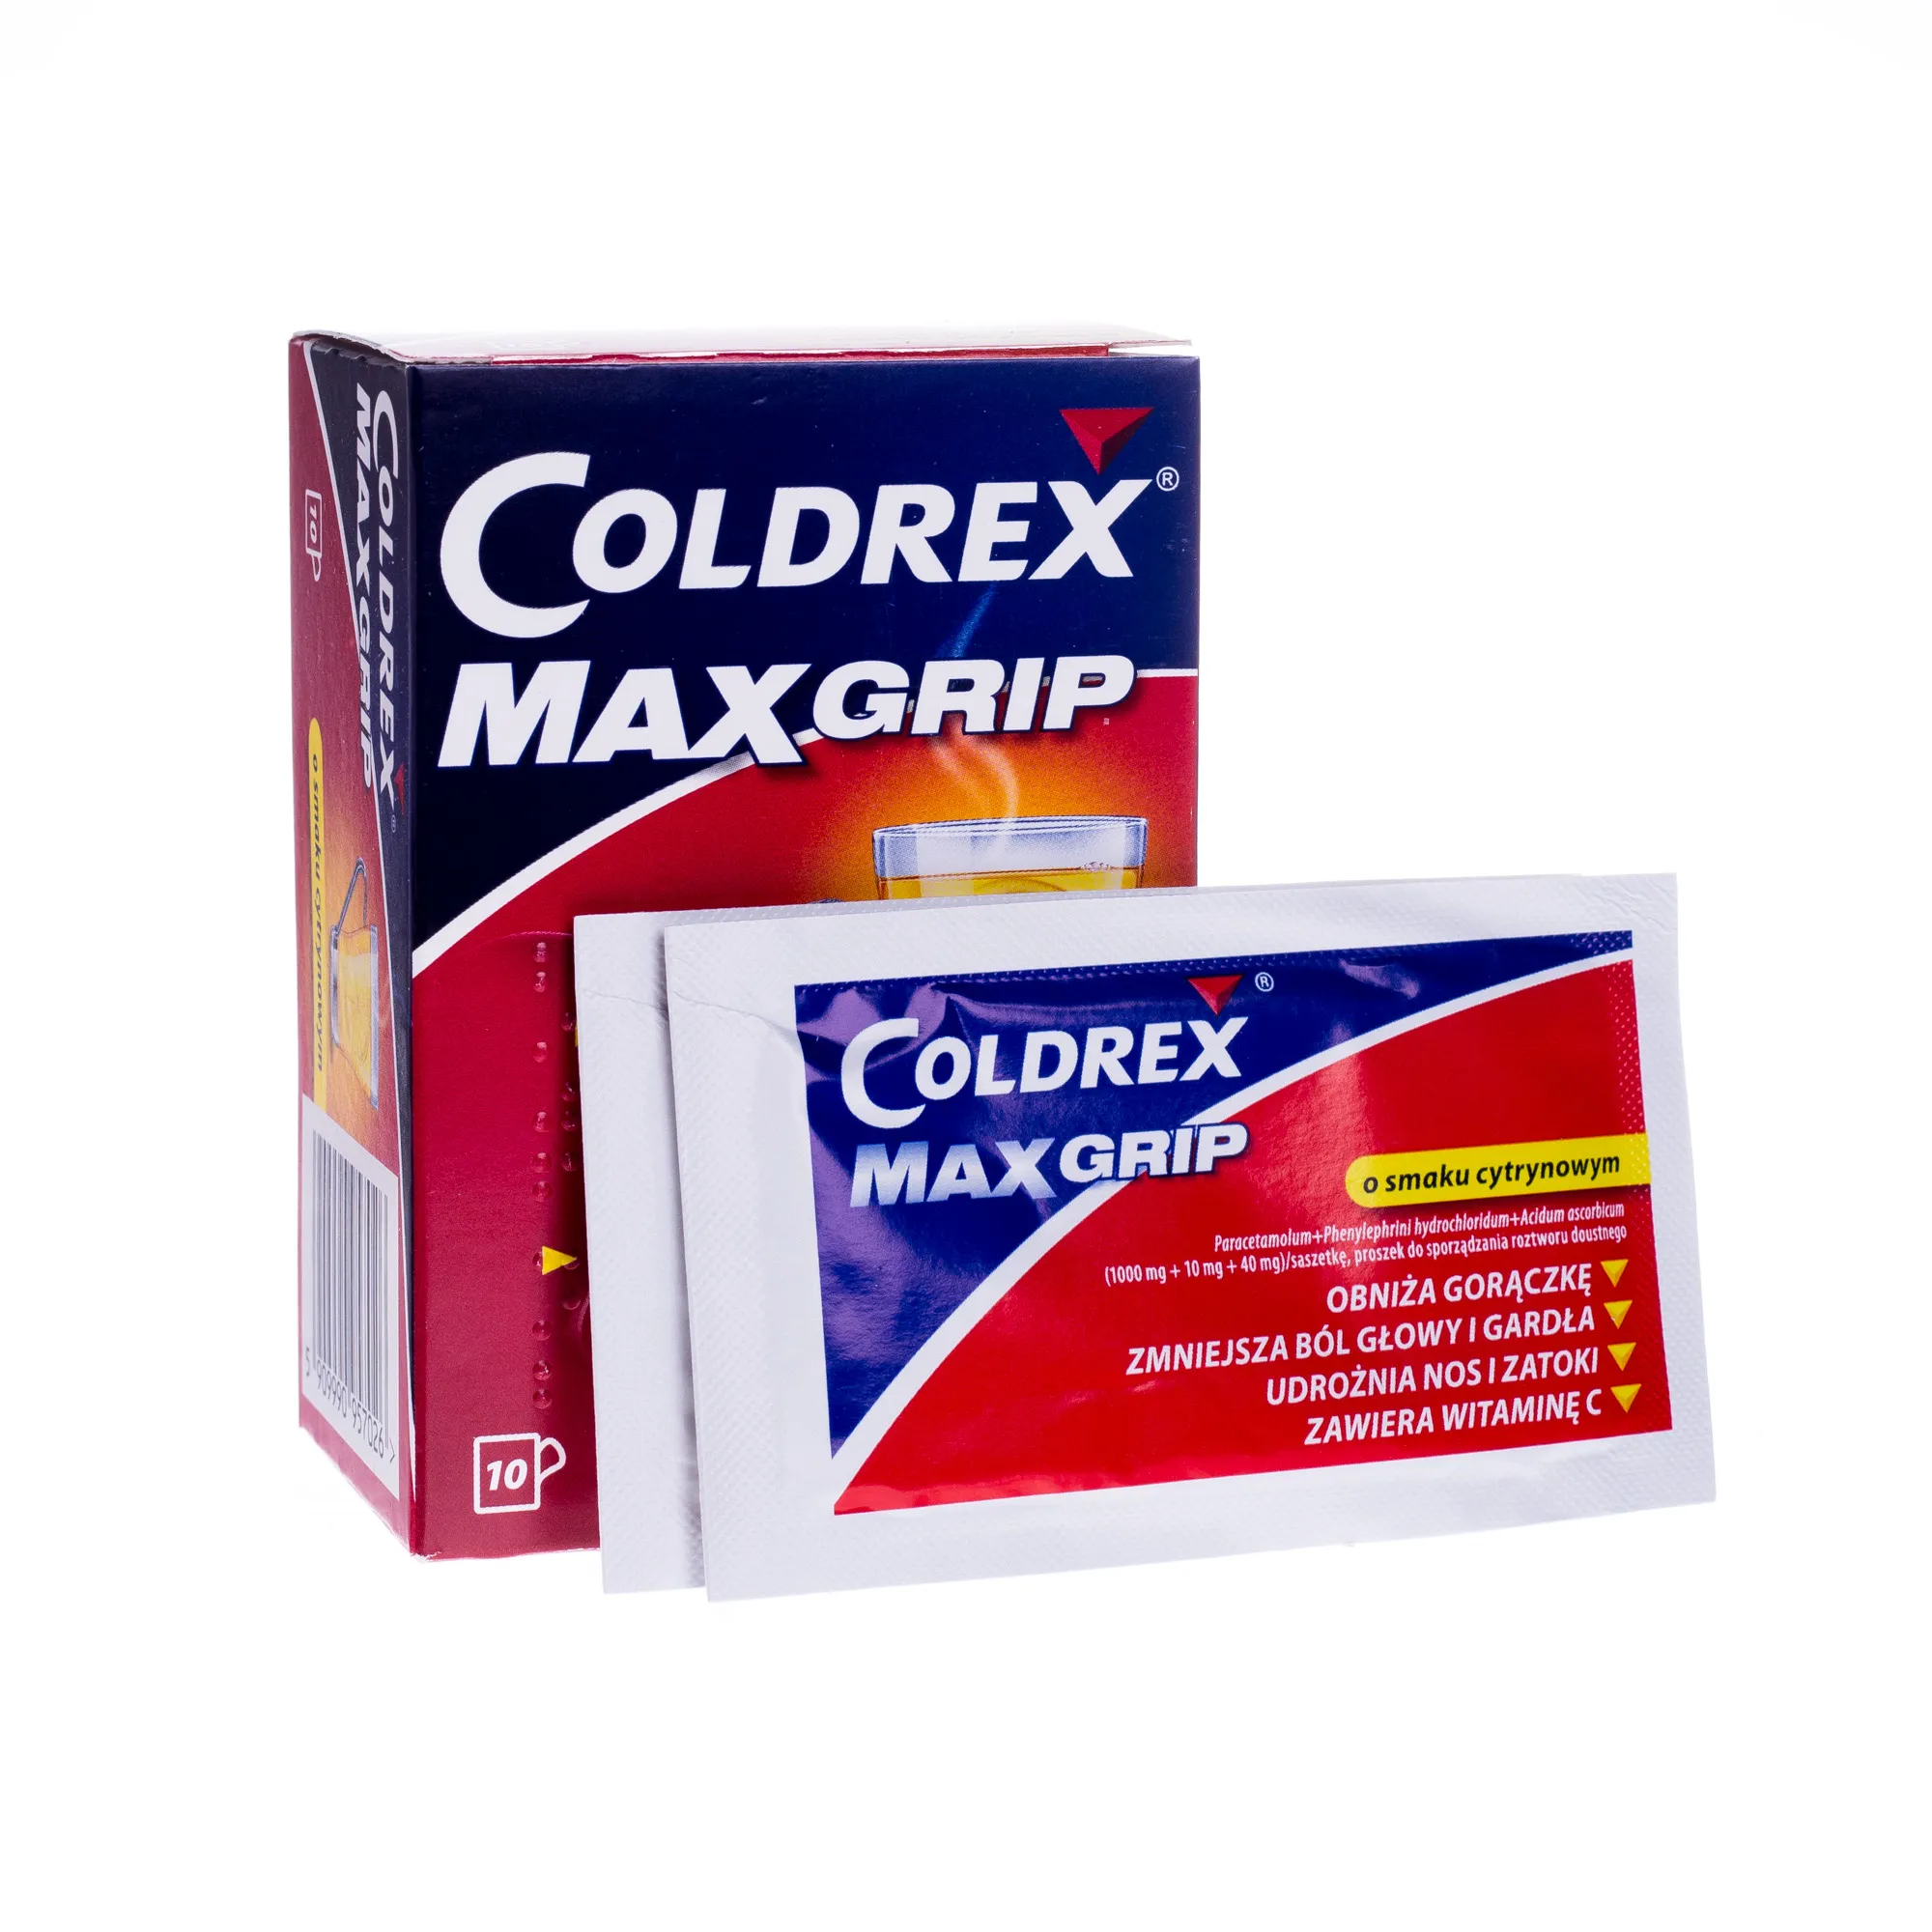 Coldrex MaxGrip.1000 mg, o smaku cytrynowym, 10 saszetek 